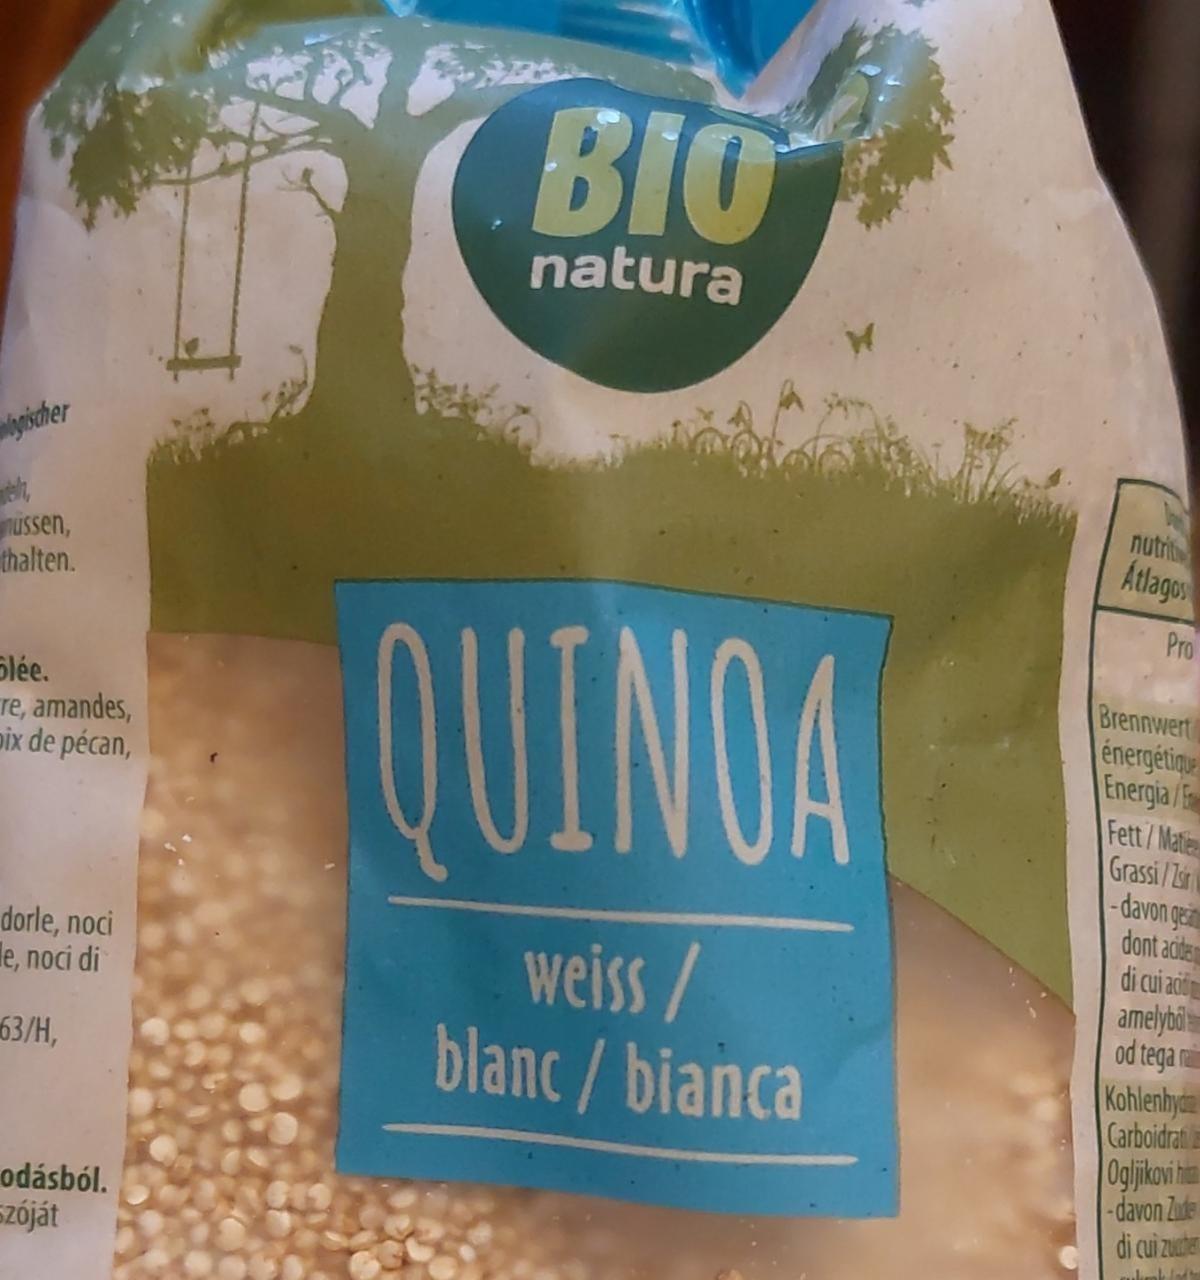 Fotografie - Quinoa Bio natura